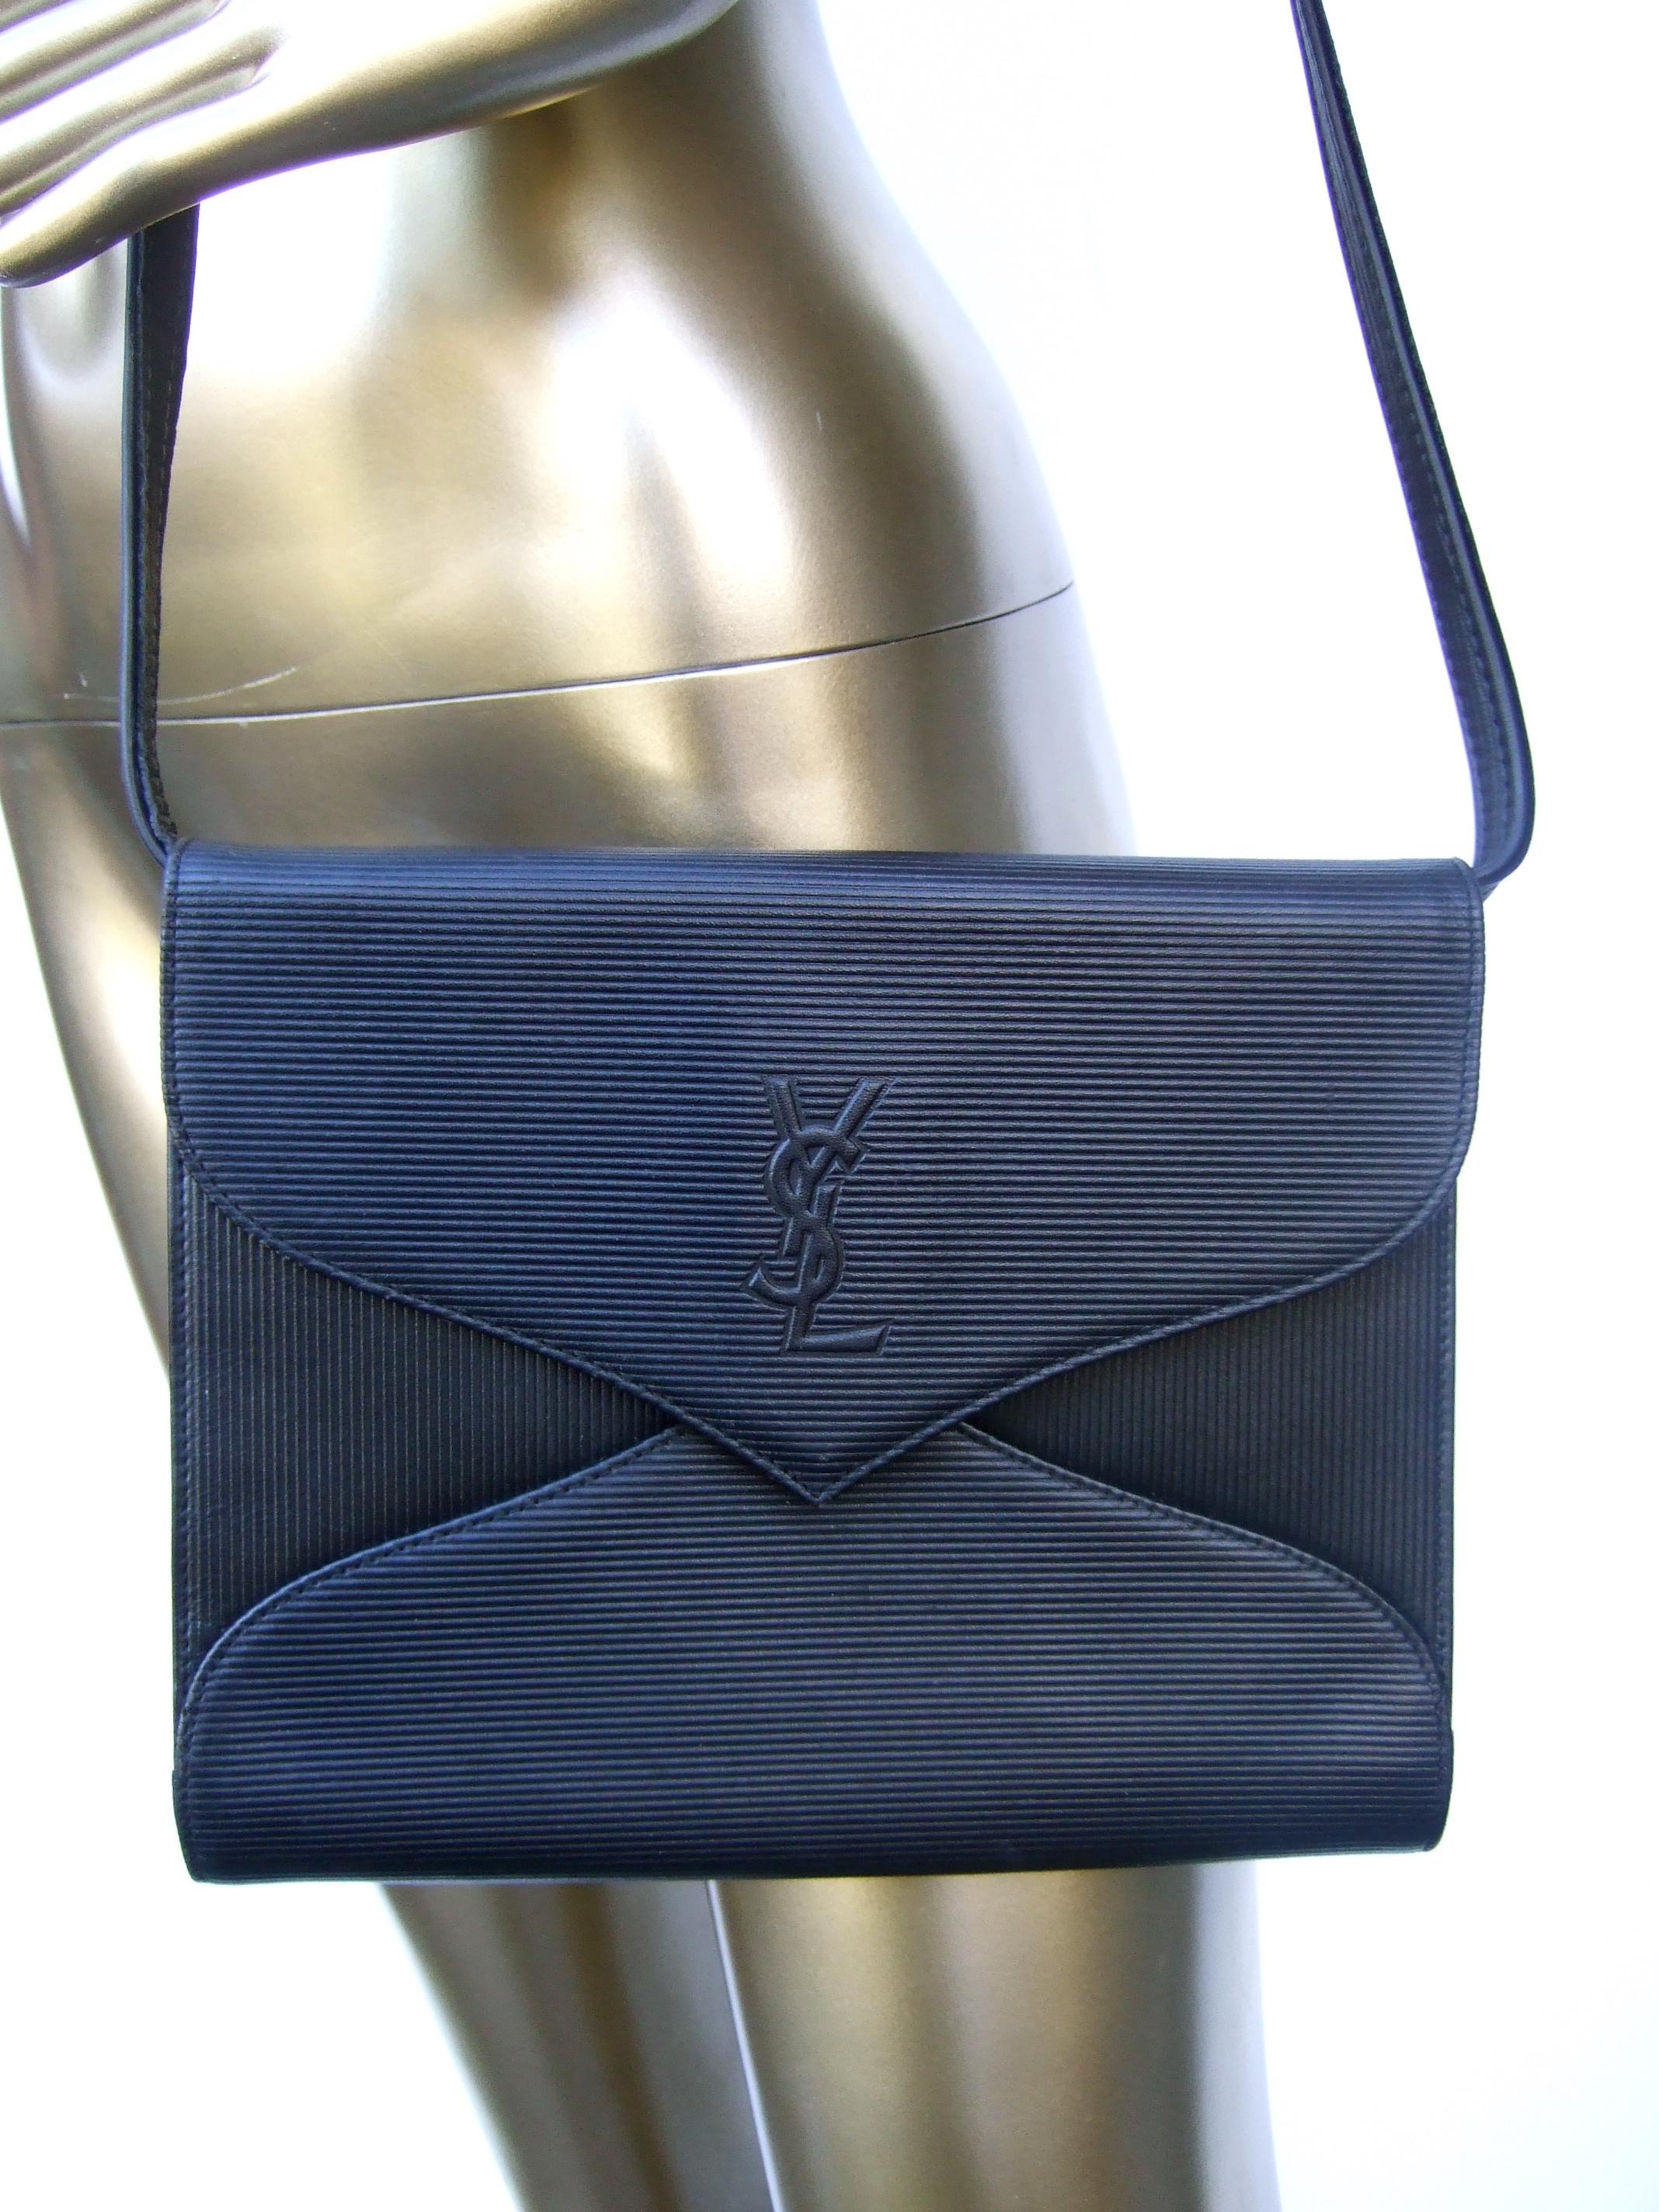 Yves Saint Laurent Chic Black Leather Versatile Clutch - Shoulder Bag c 1980s 6